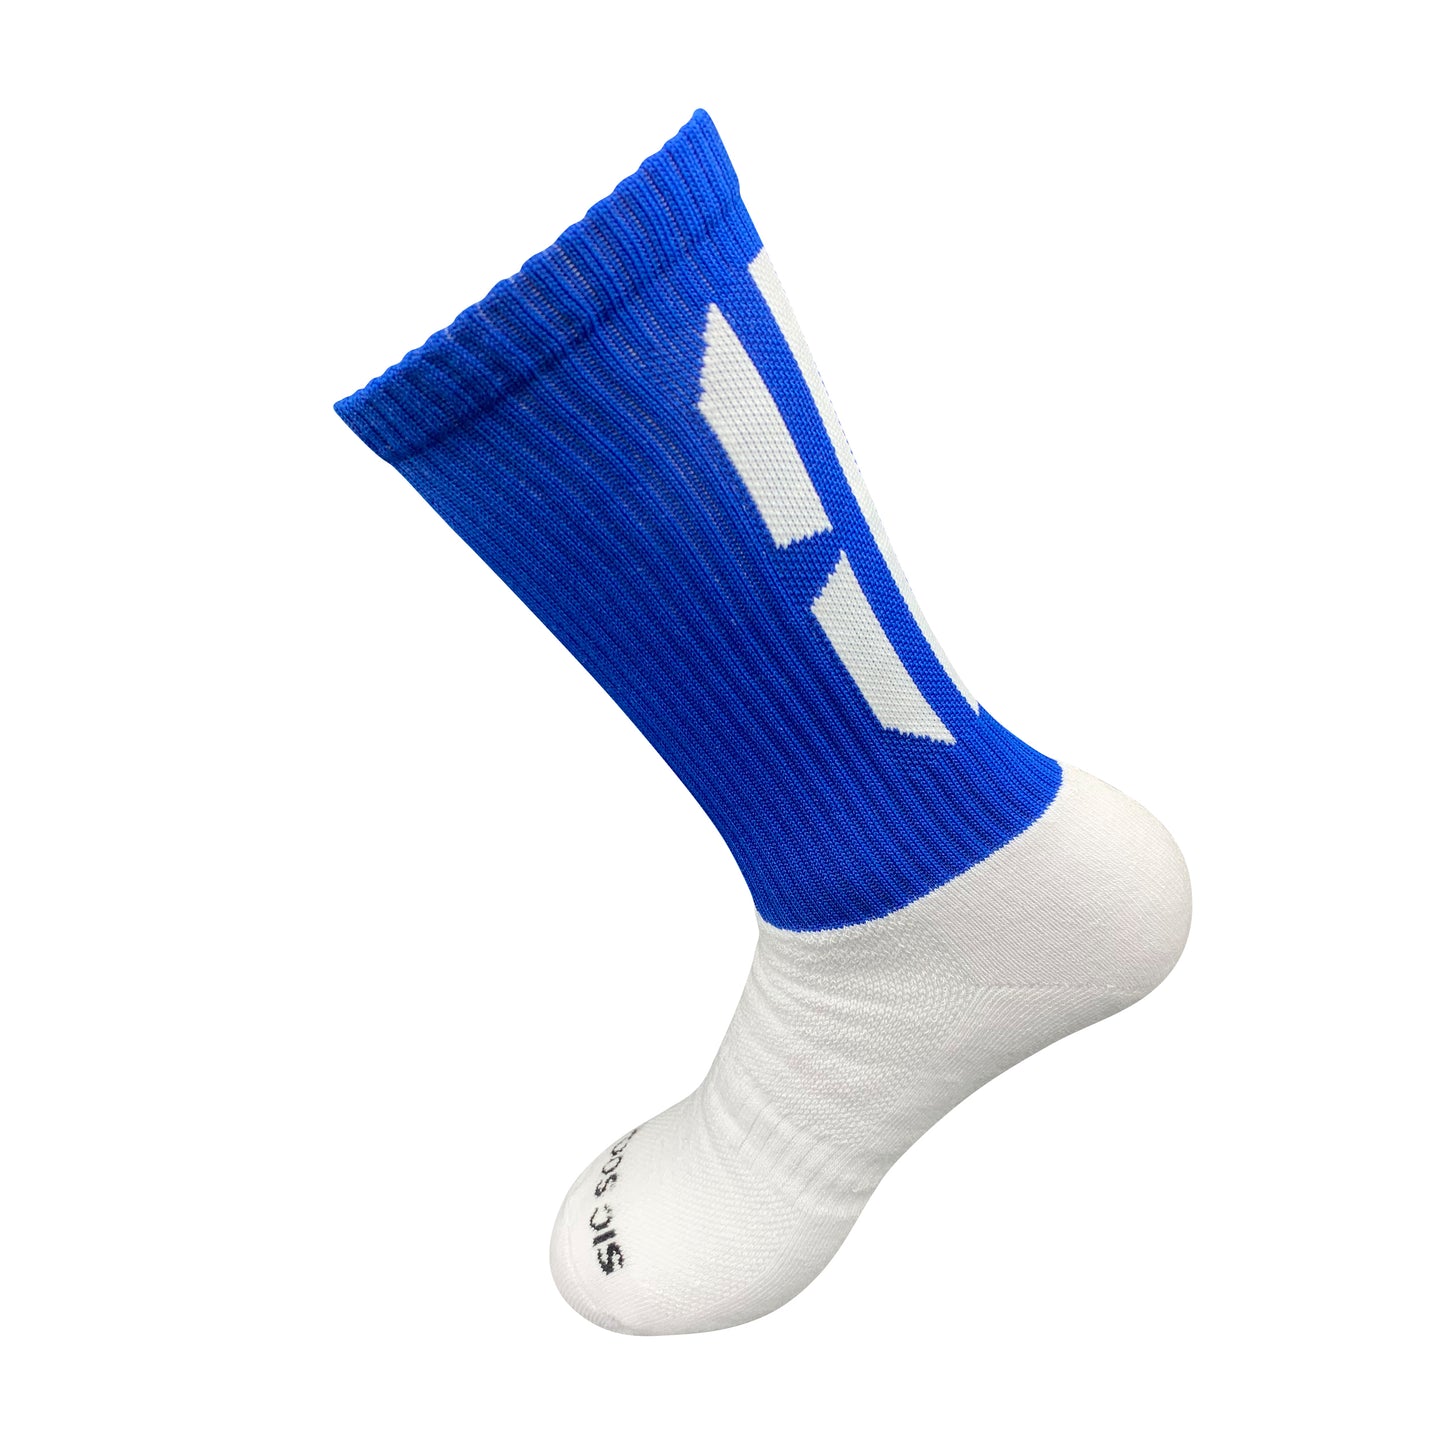 Gael-Tek Mid Socks For Gaelic Games | Blue & White